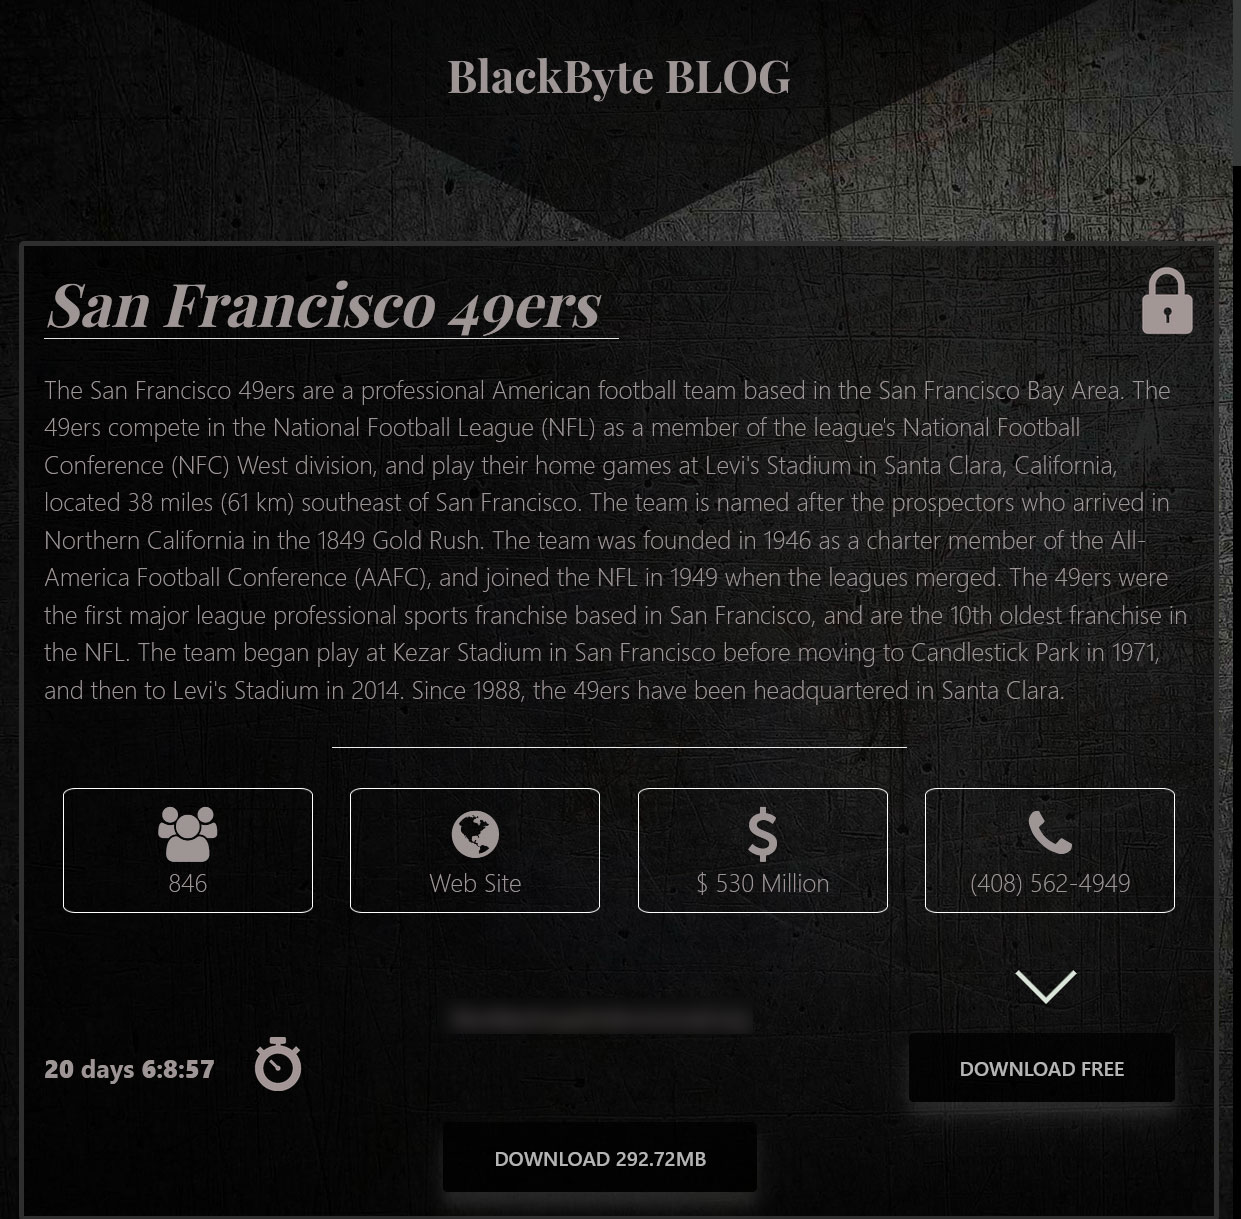   BlackByte fidye yazılımı San Francisco 49ers'ın verilerini sızdırıyor